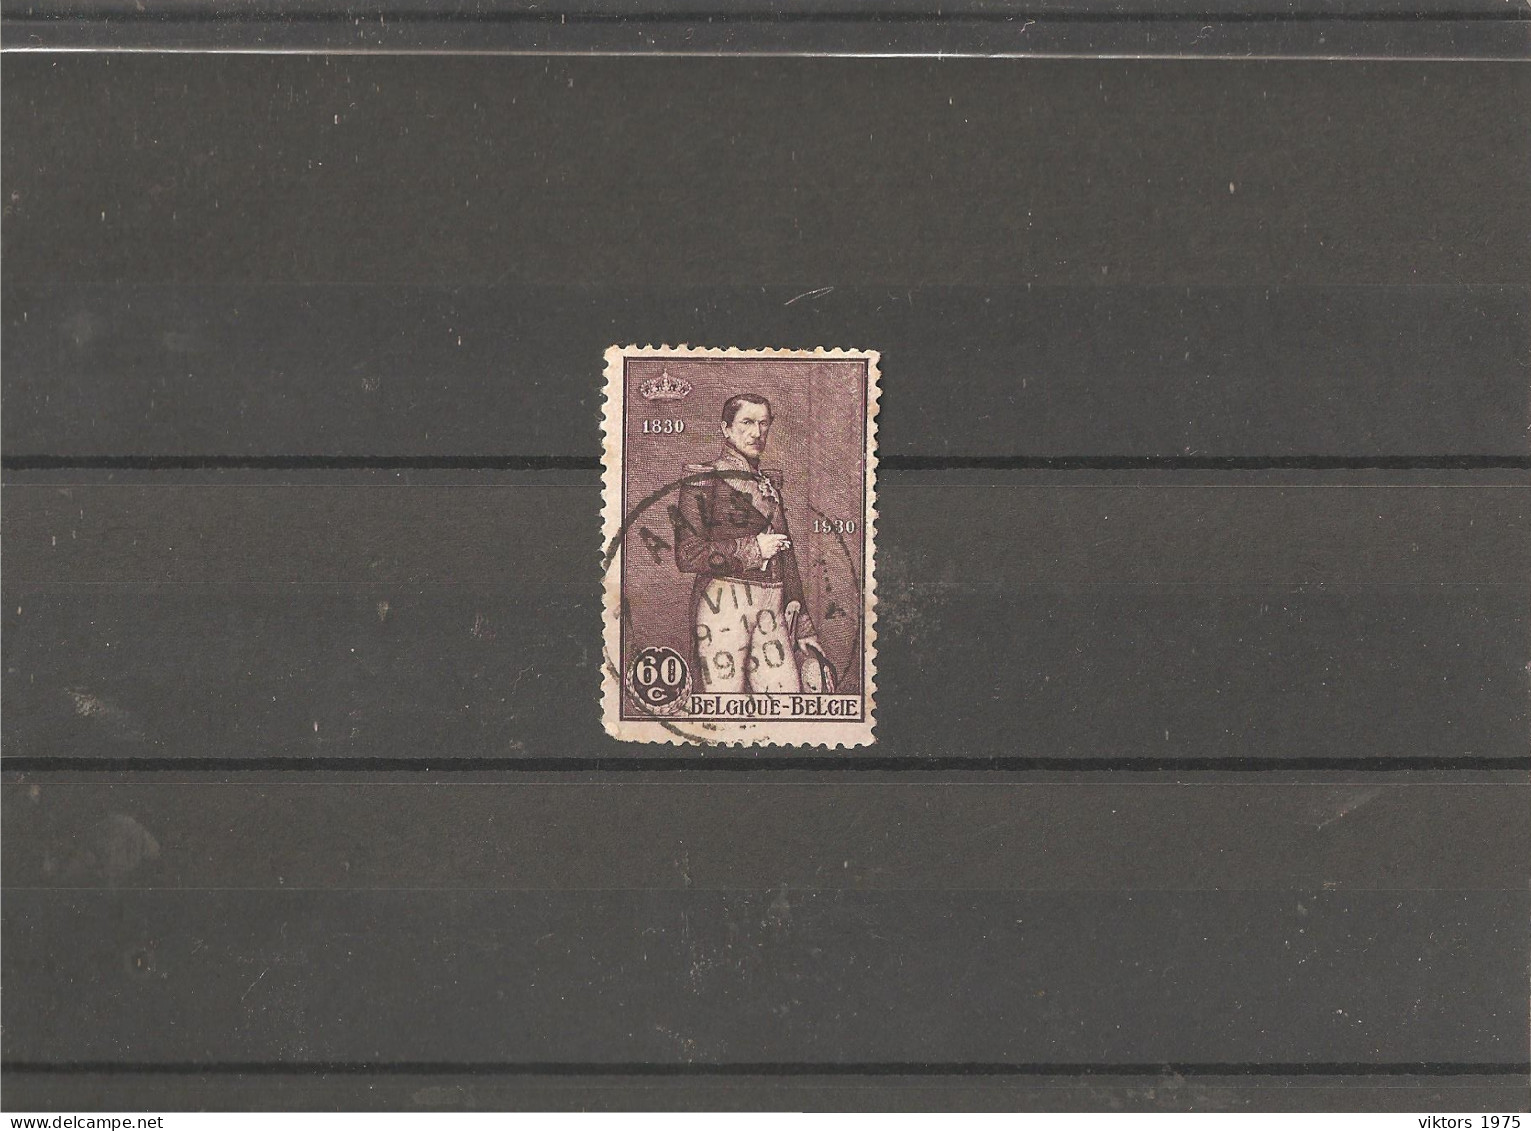 Used Stamp Nr.284 In MICHEL Catalog - Usati